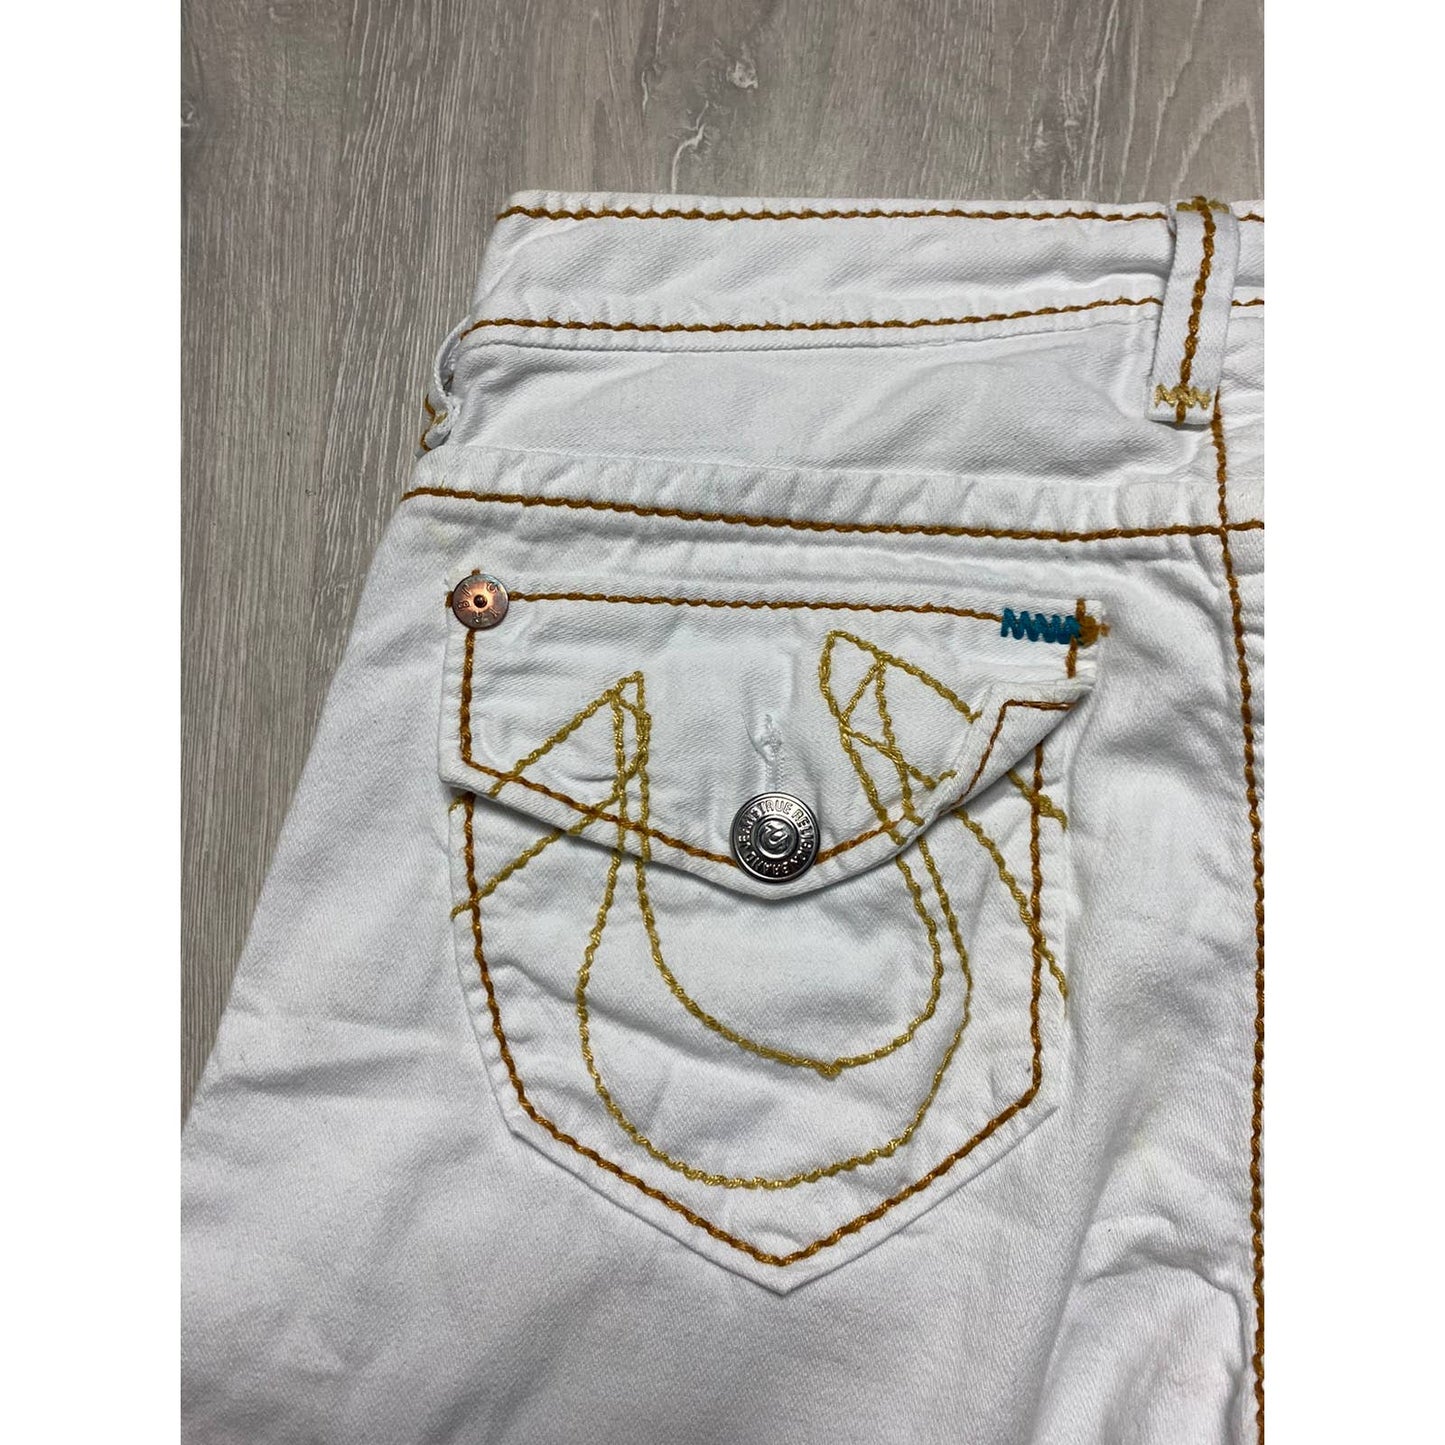 True Religion vintage white jeans Orange thick stitching Y2K